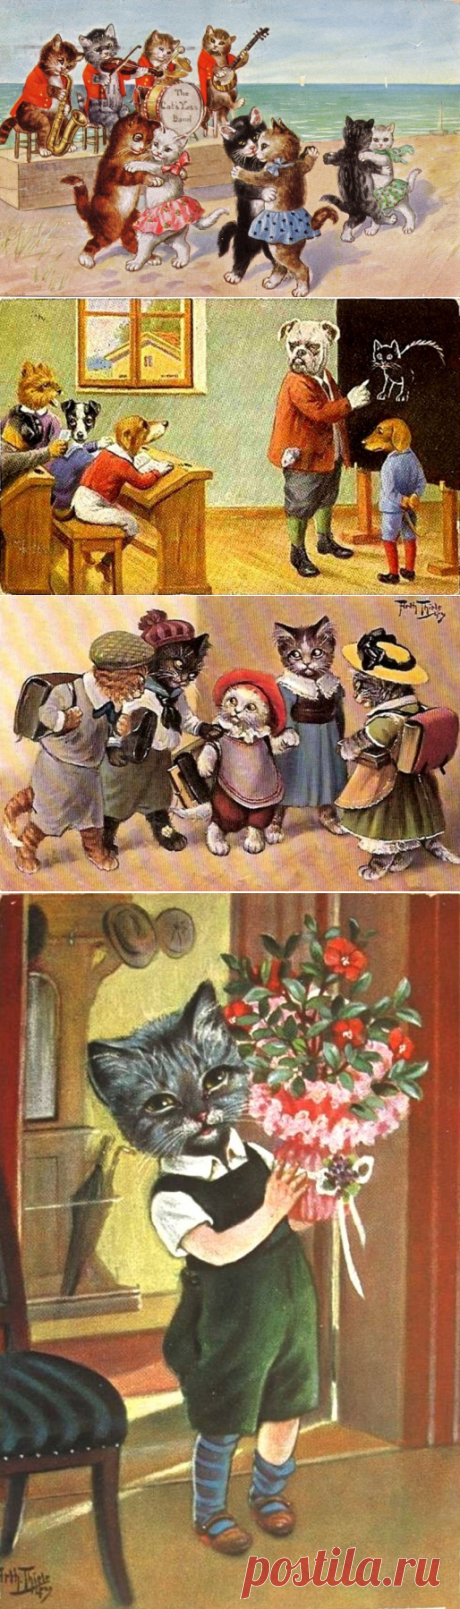 Артур Тиле и его котики и собачки.